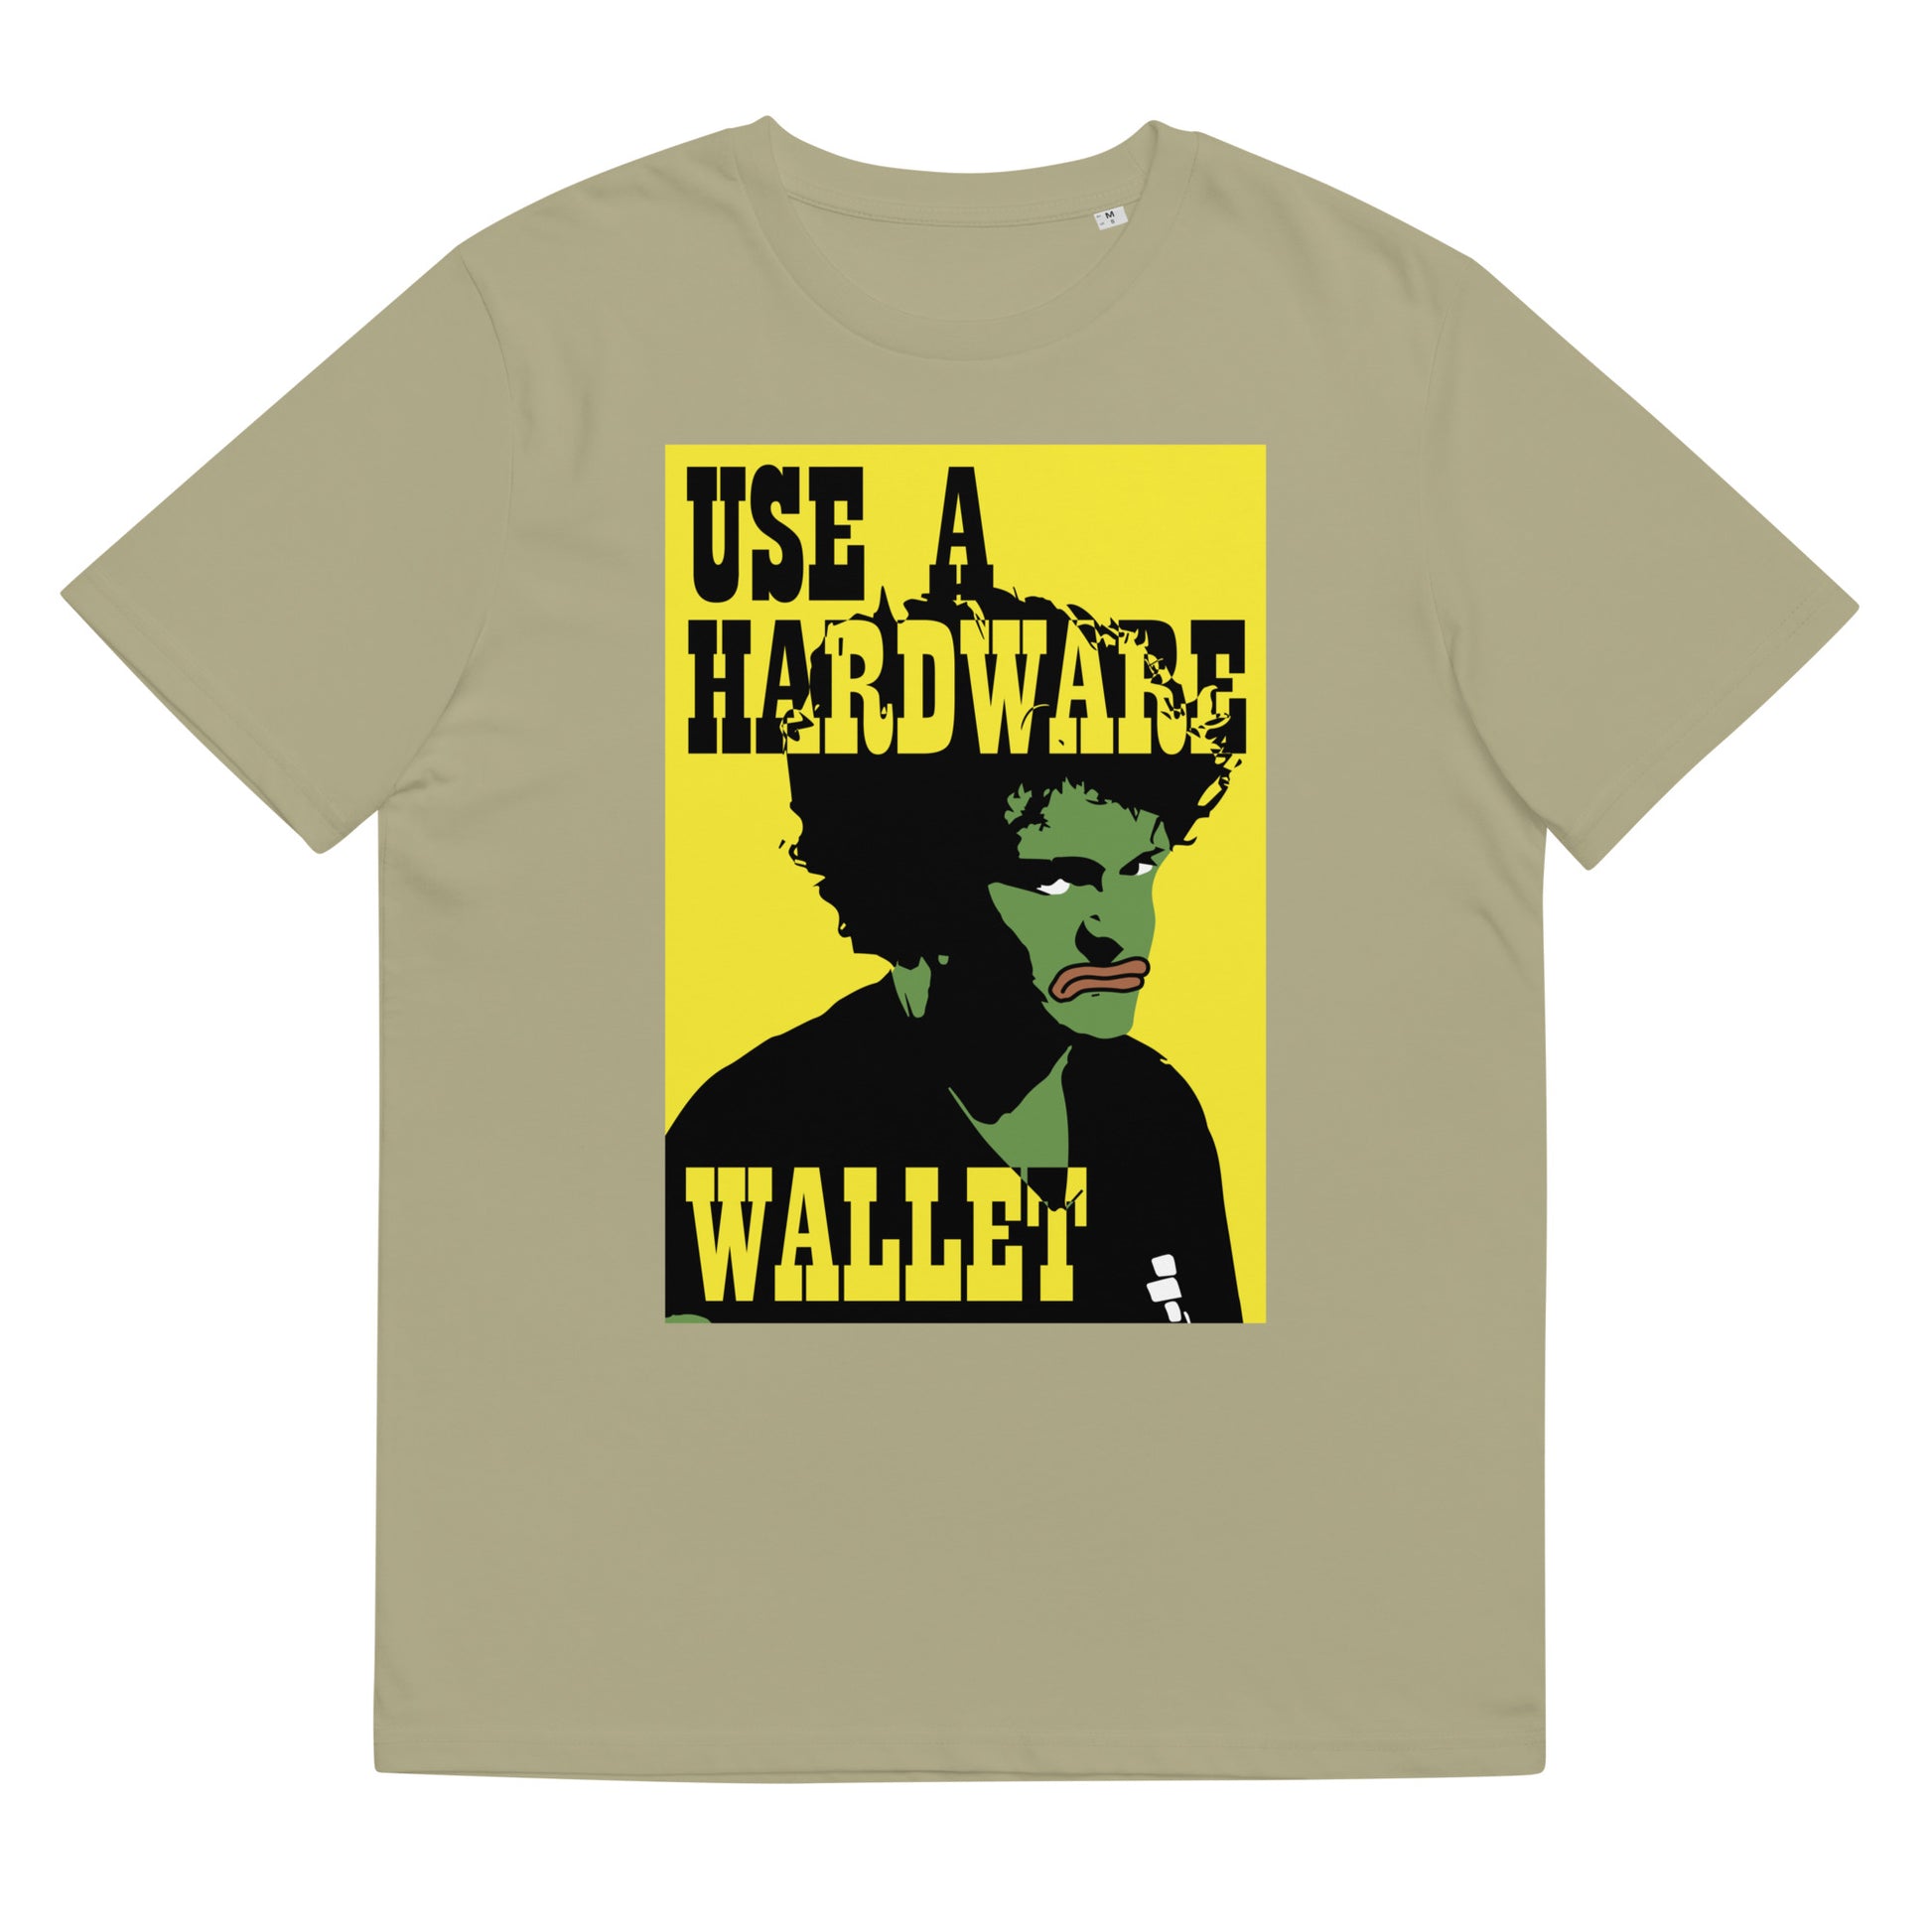 use-hardware-wallet-t-shirt-sage